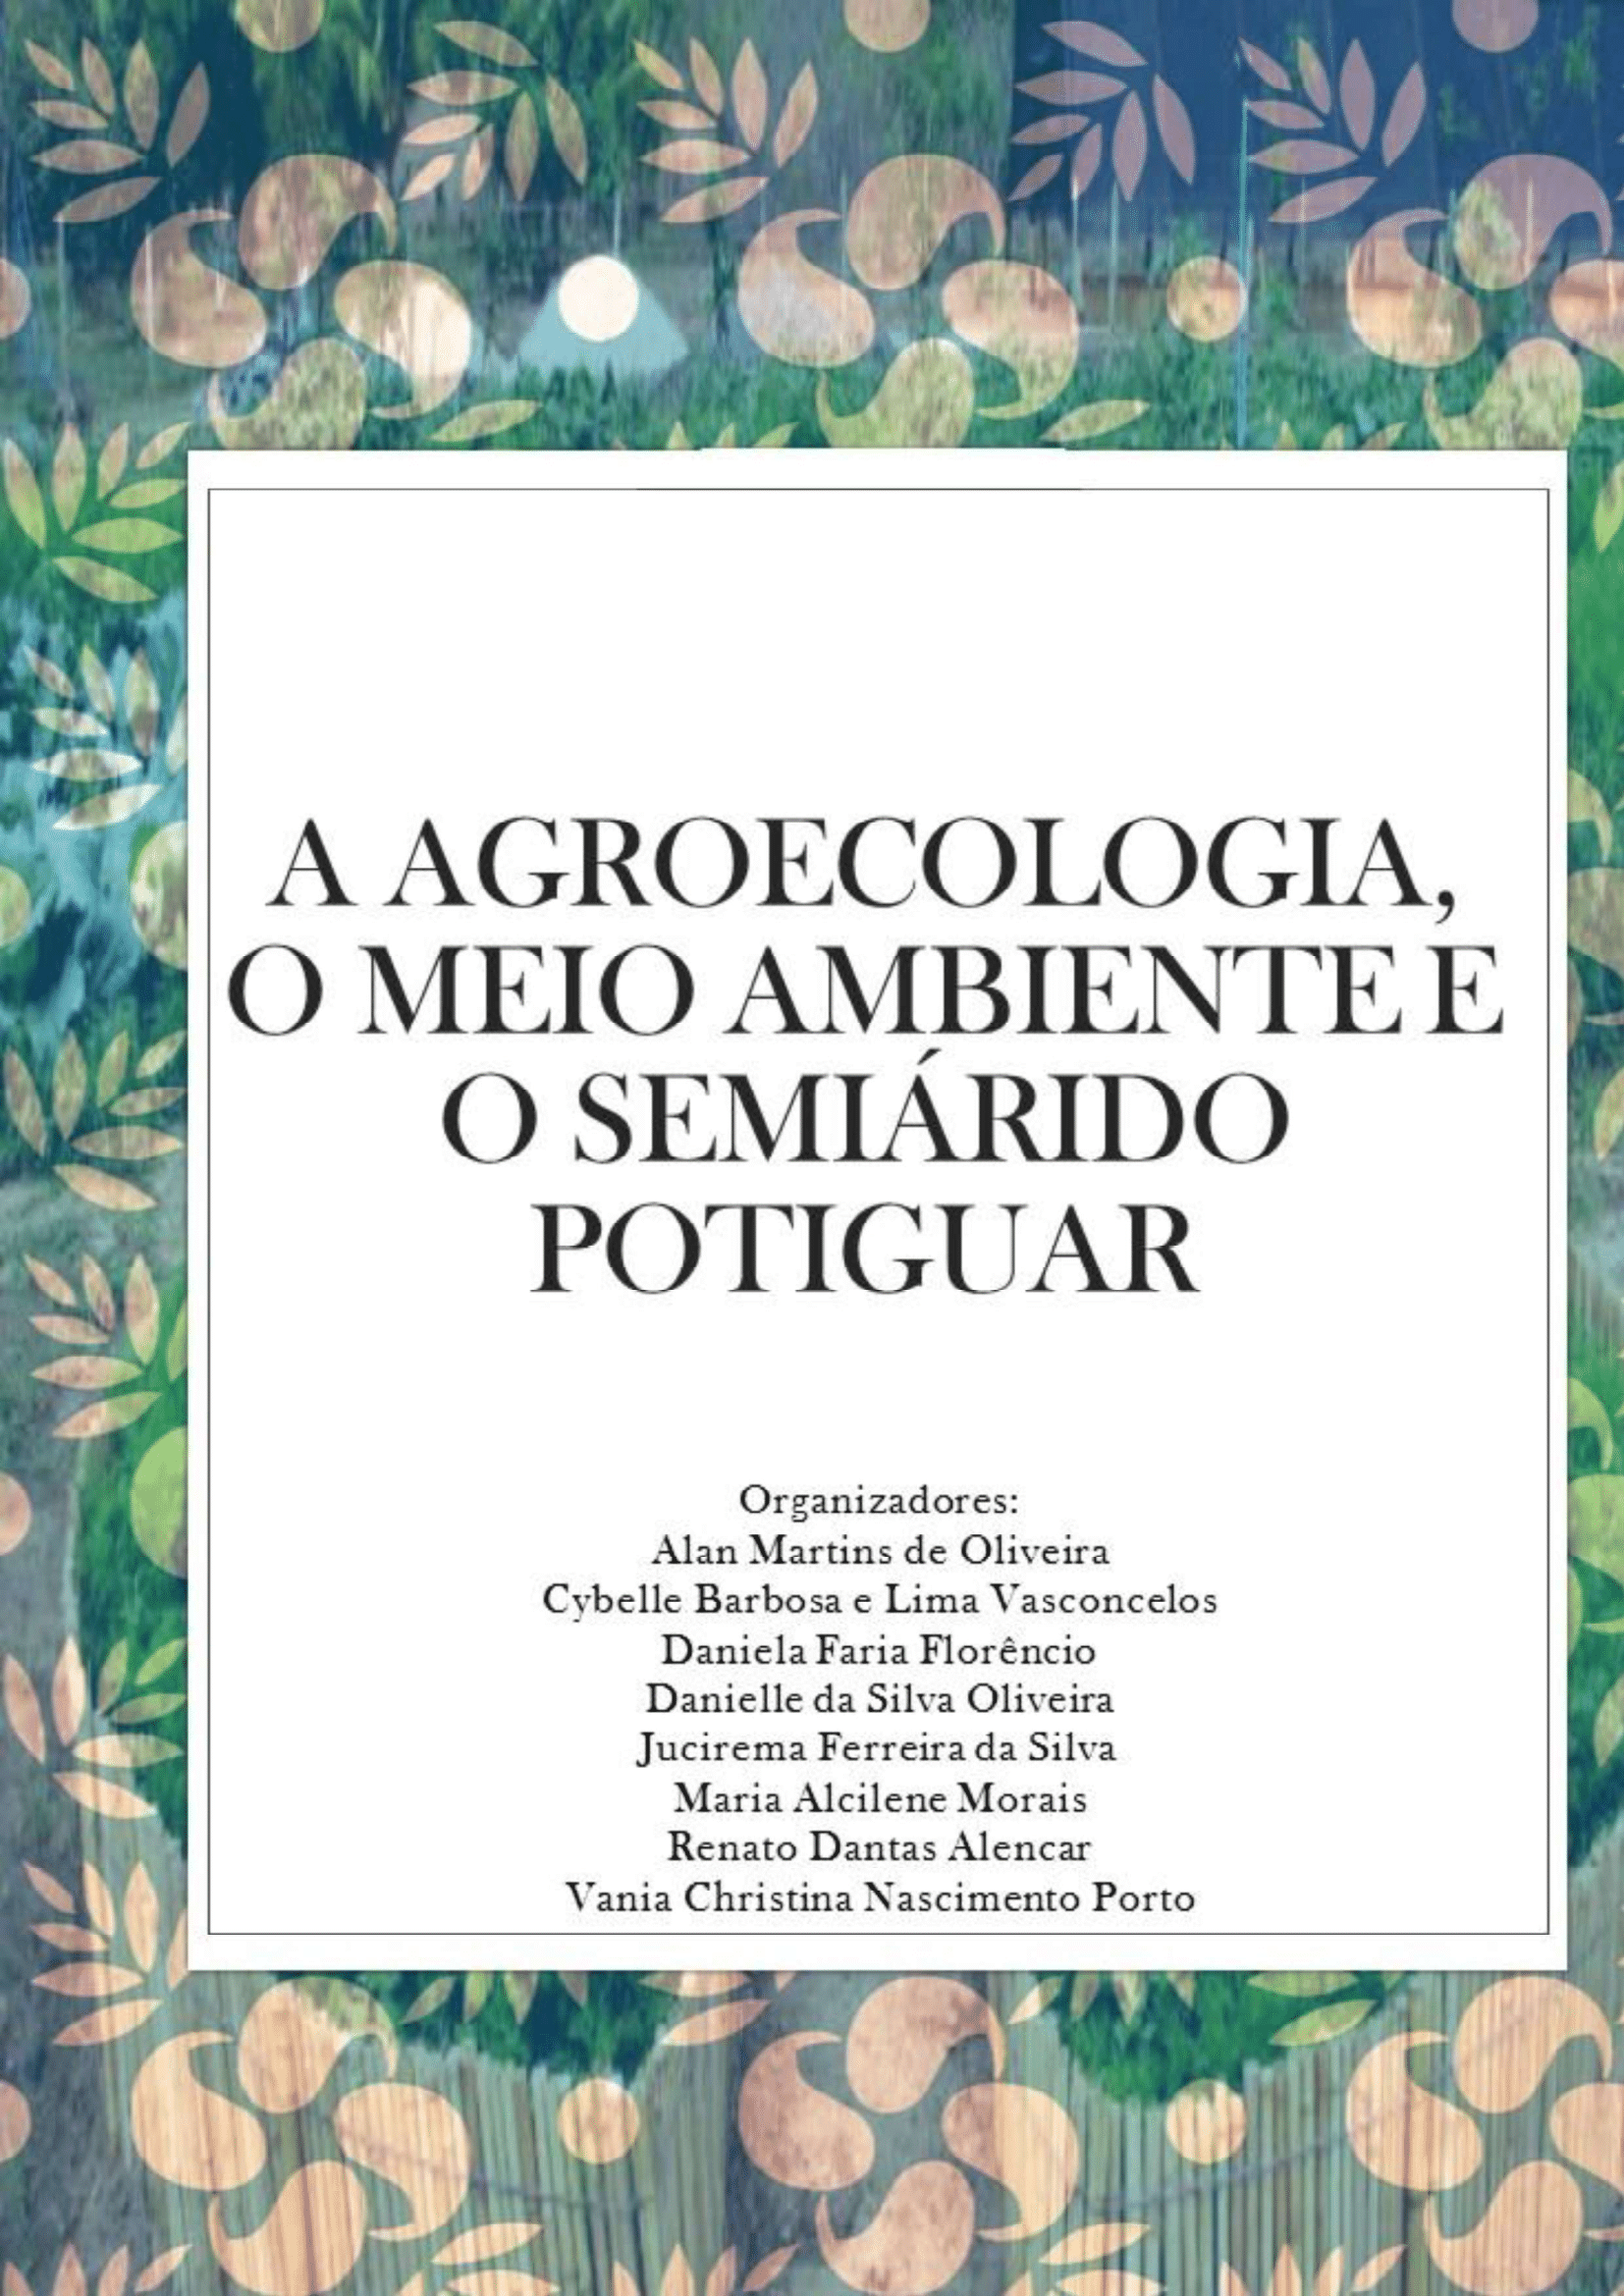 					Afficher 2017: I Seminário Potiguar de Agroecologia e Meio Ambiente
				